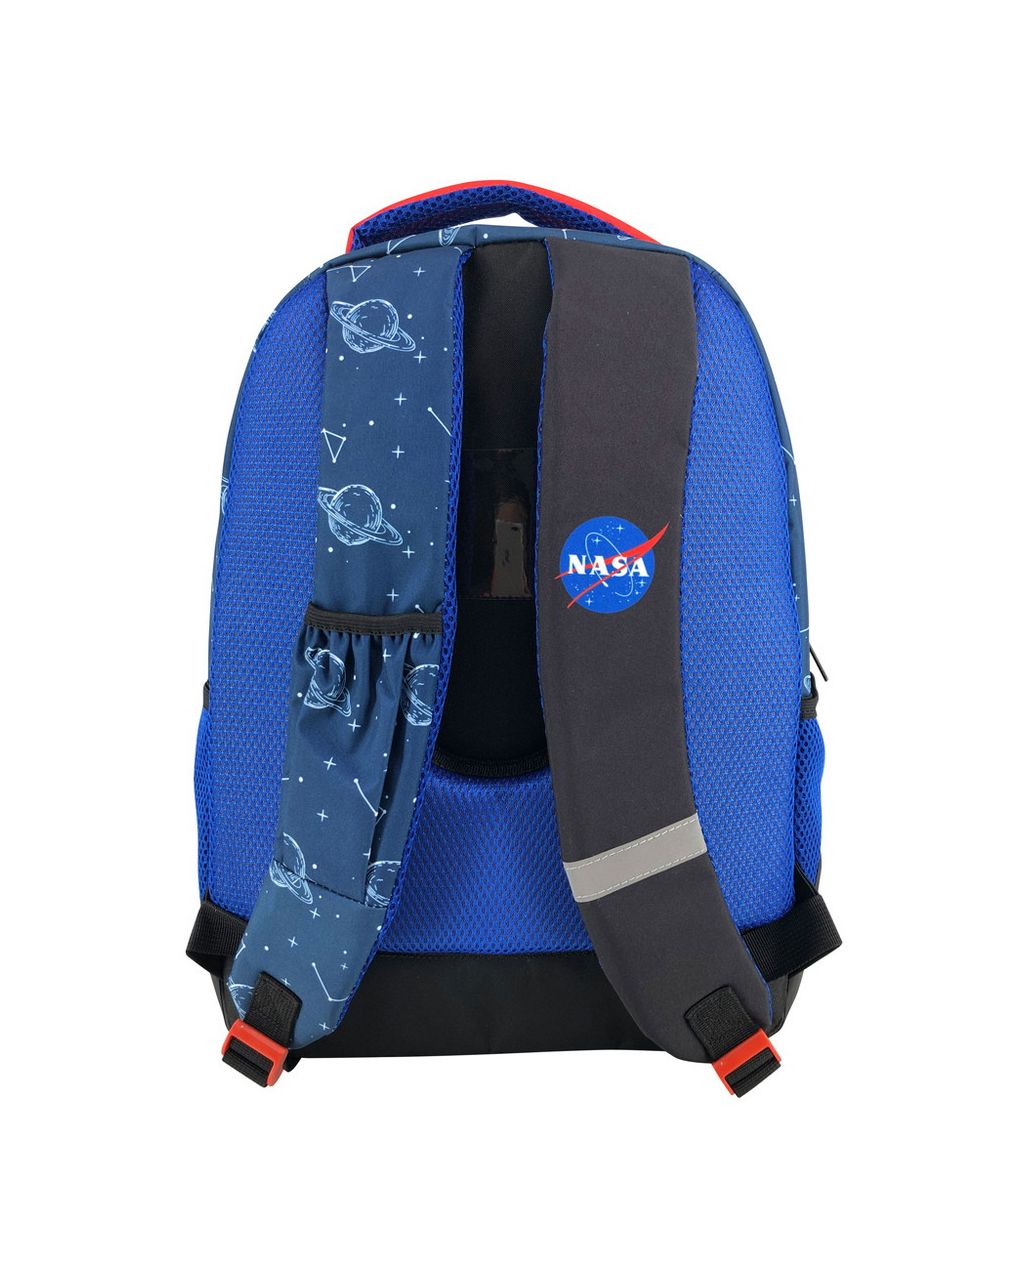 σχολική τσάντα πλάτης δημοτικού nasa expeditions 3 θήκες 000486002 - NASA